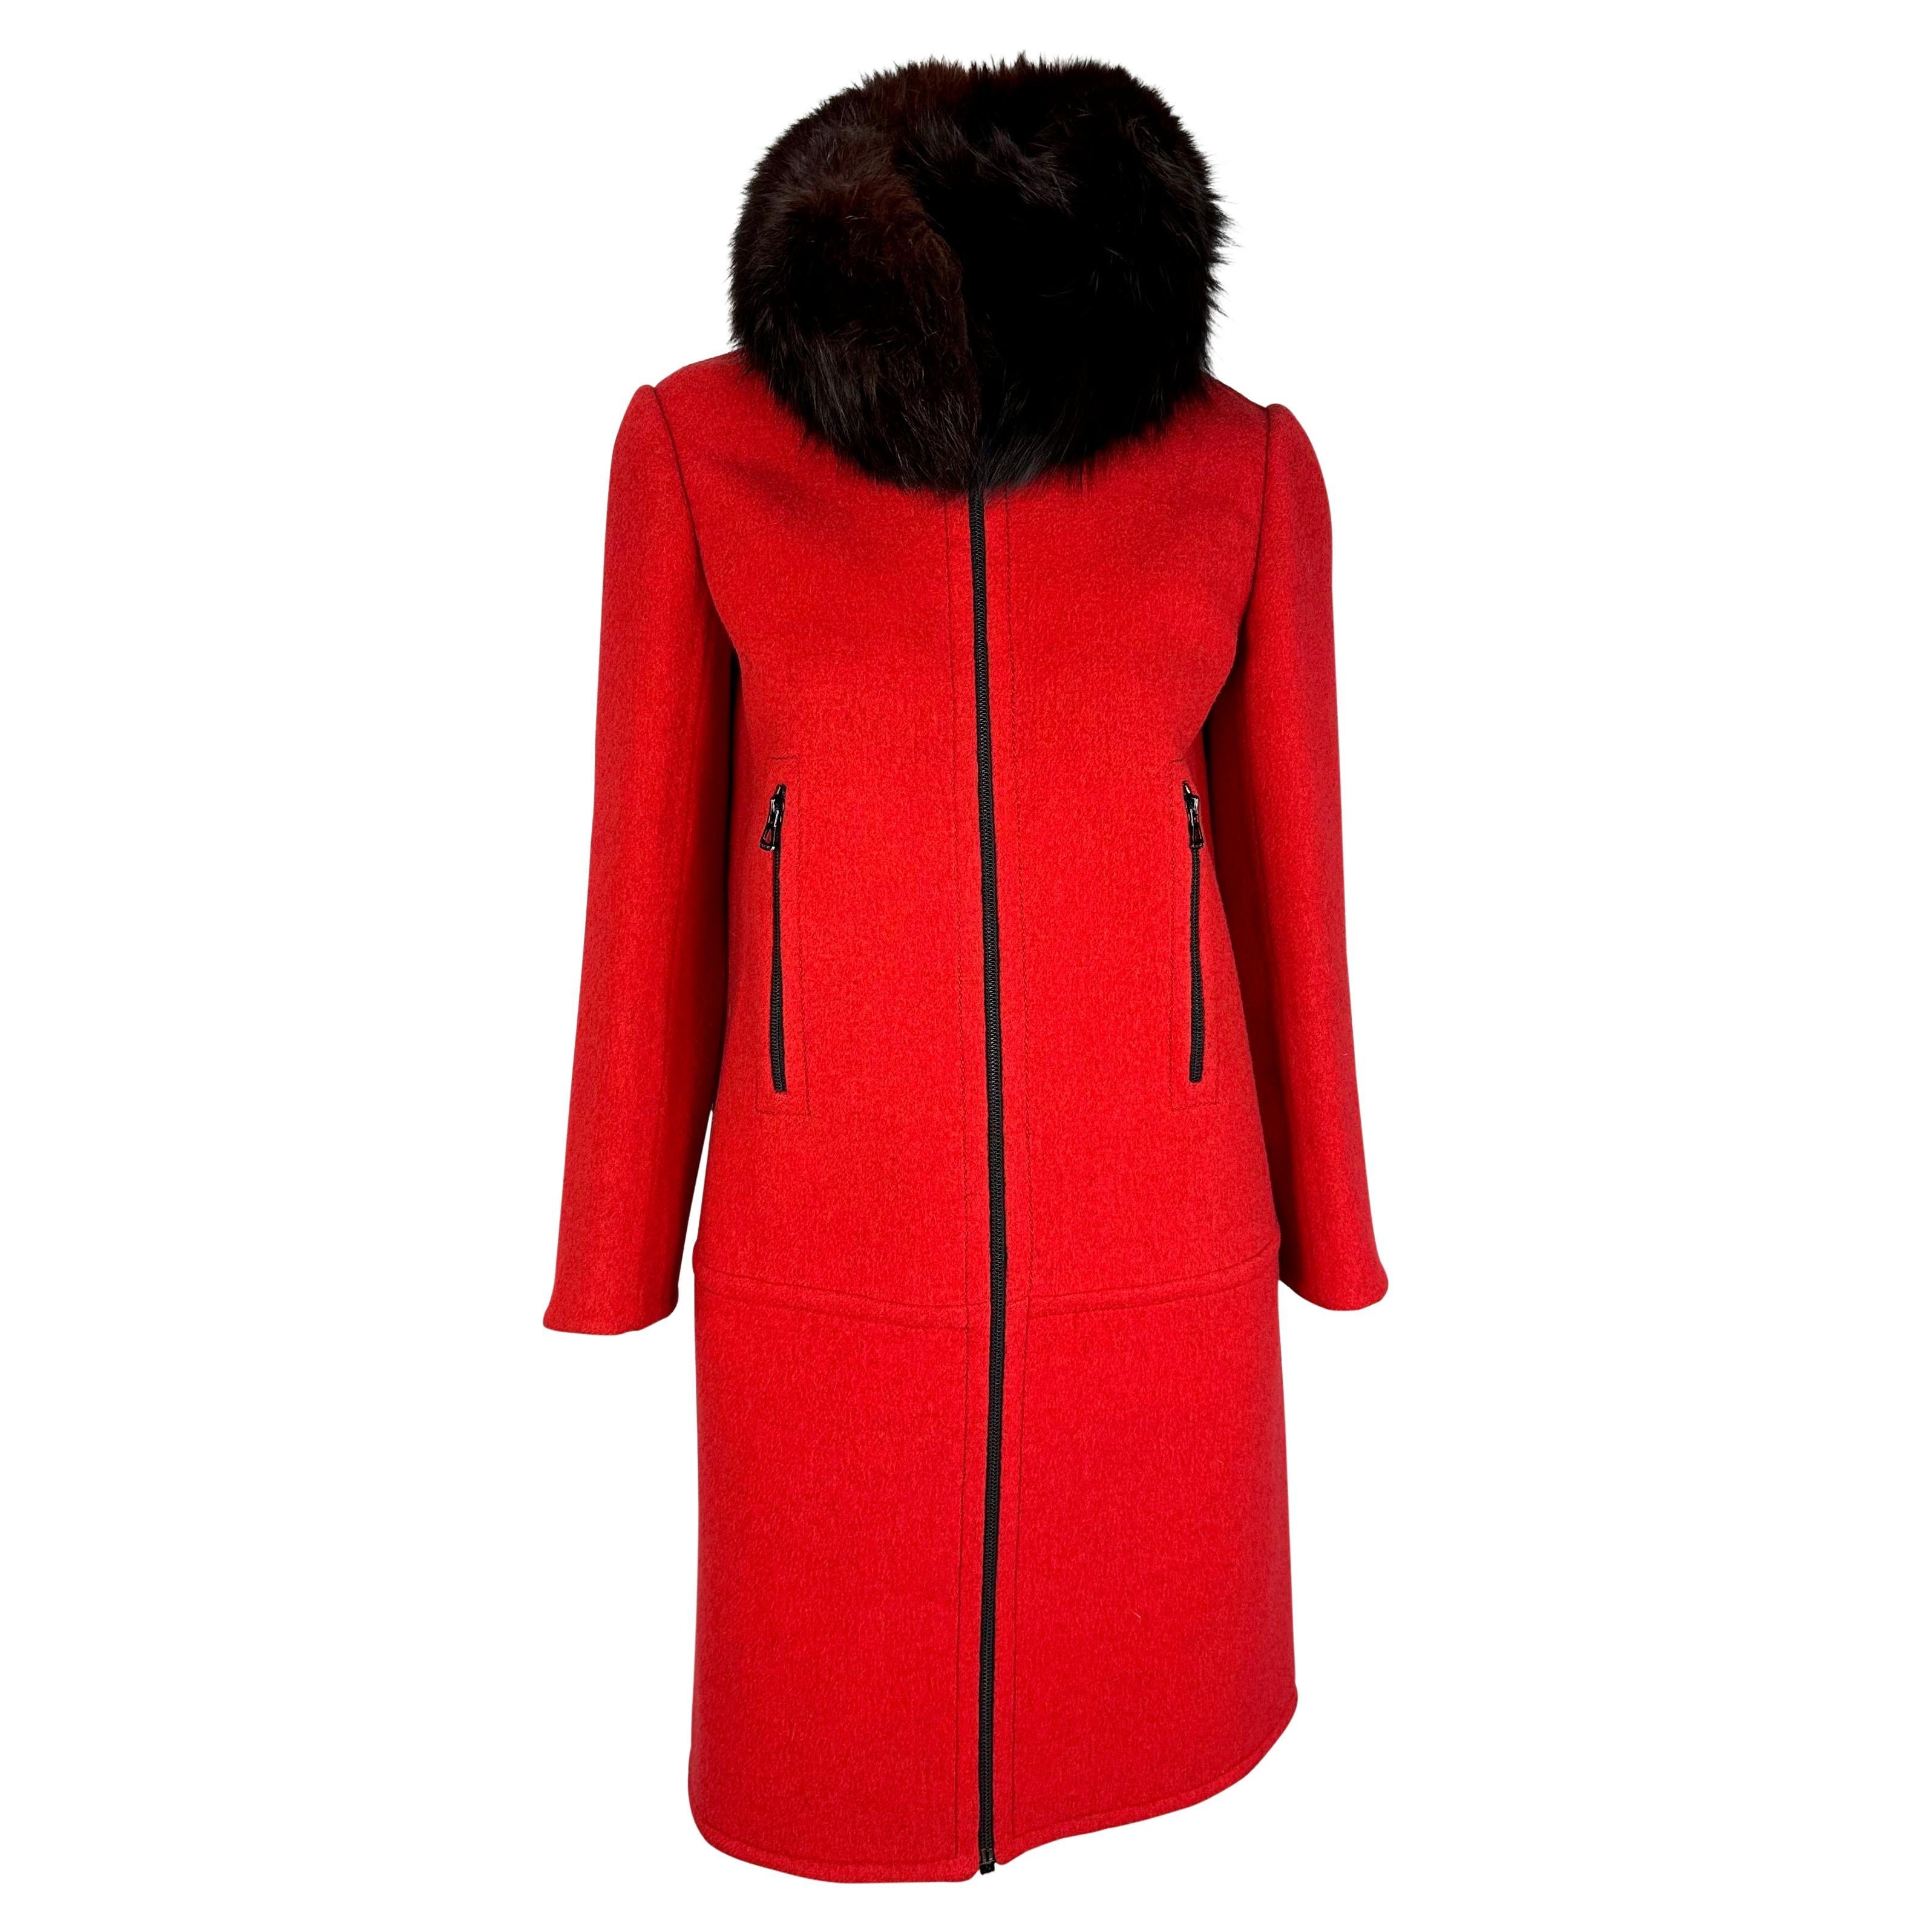 H/W 1969 Christian Dior Haute Couture Jacke mit Pelzkragen aus roter Wolle 